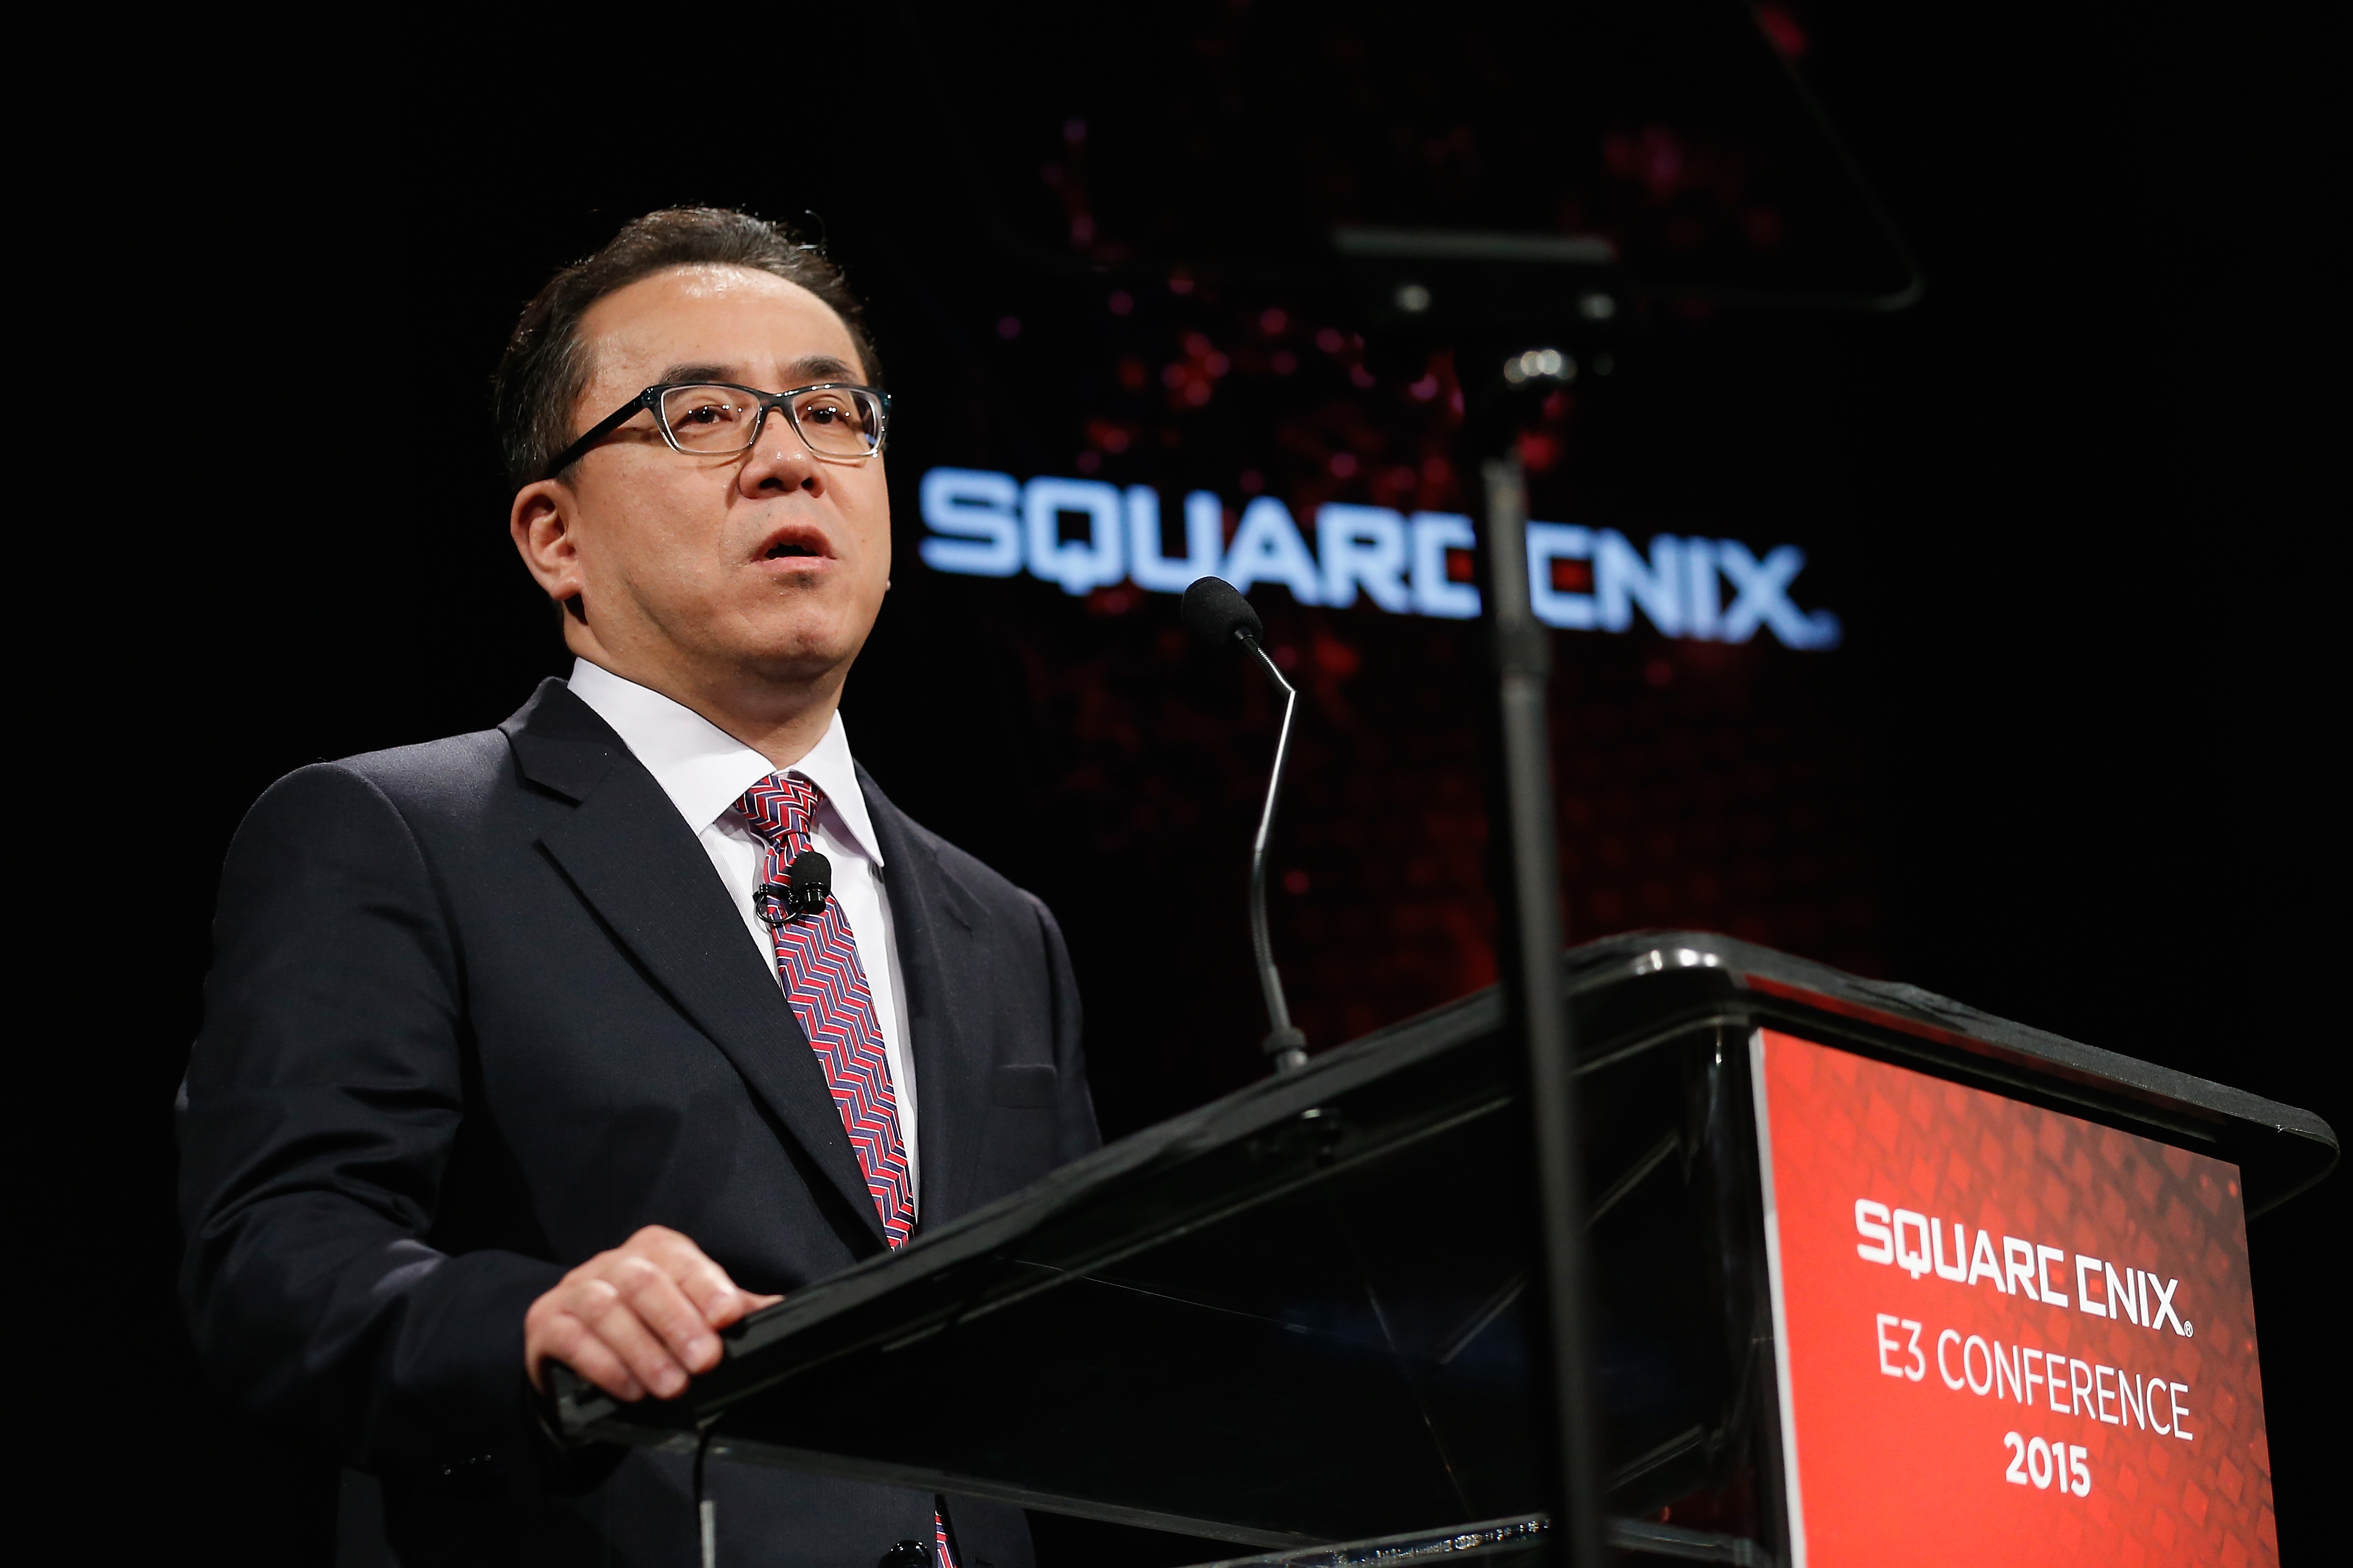 Square Enix President Yosuke Matsuda at a podium at the E3 2015 Conference